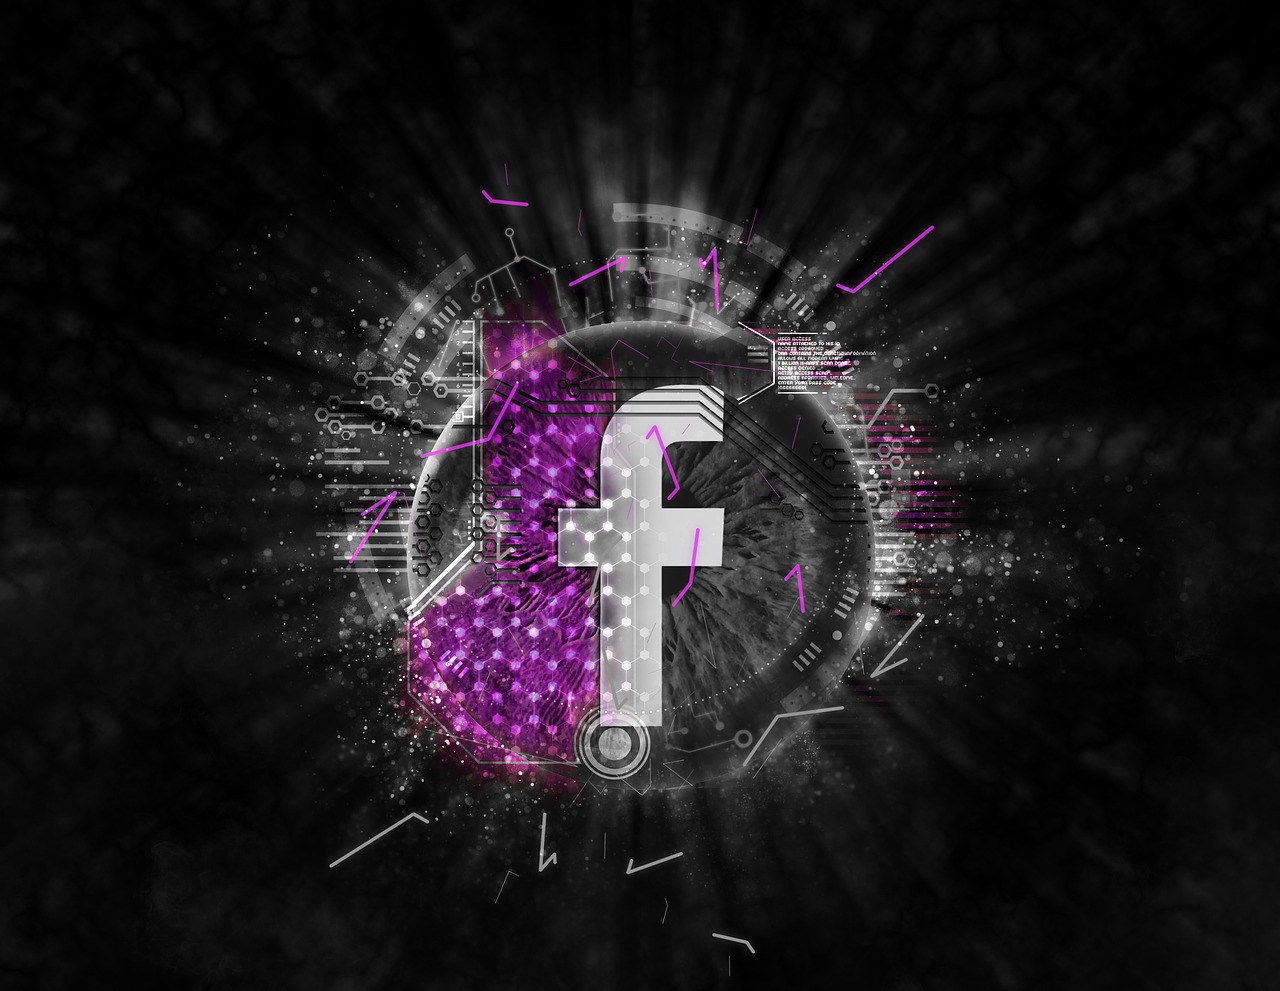 Promocja nowej strony – agencje interaktywne facebook. Marketing społecznościowy – Kampanie facebook